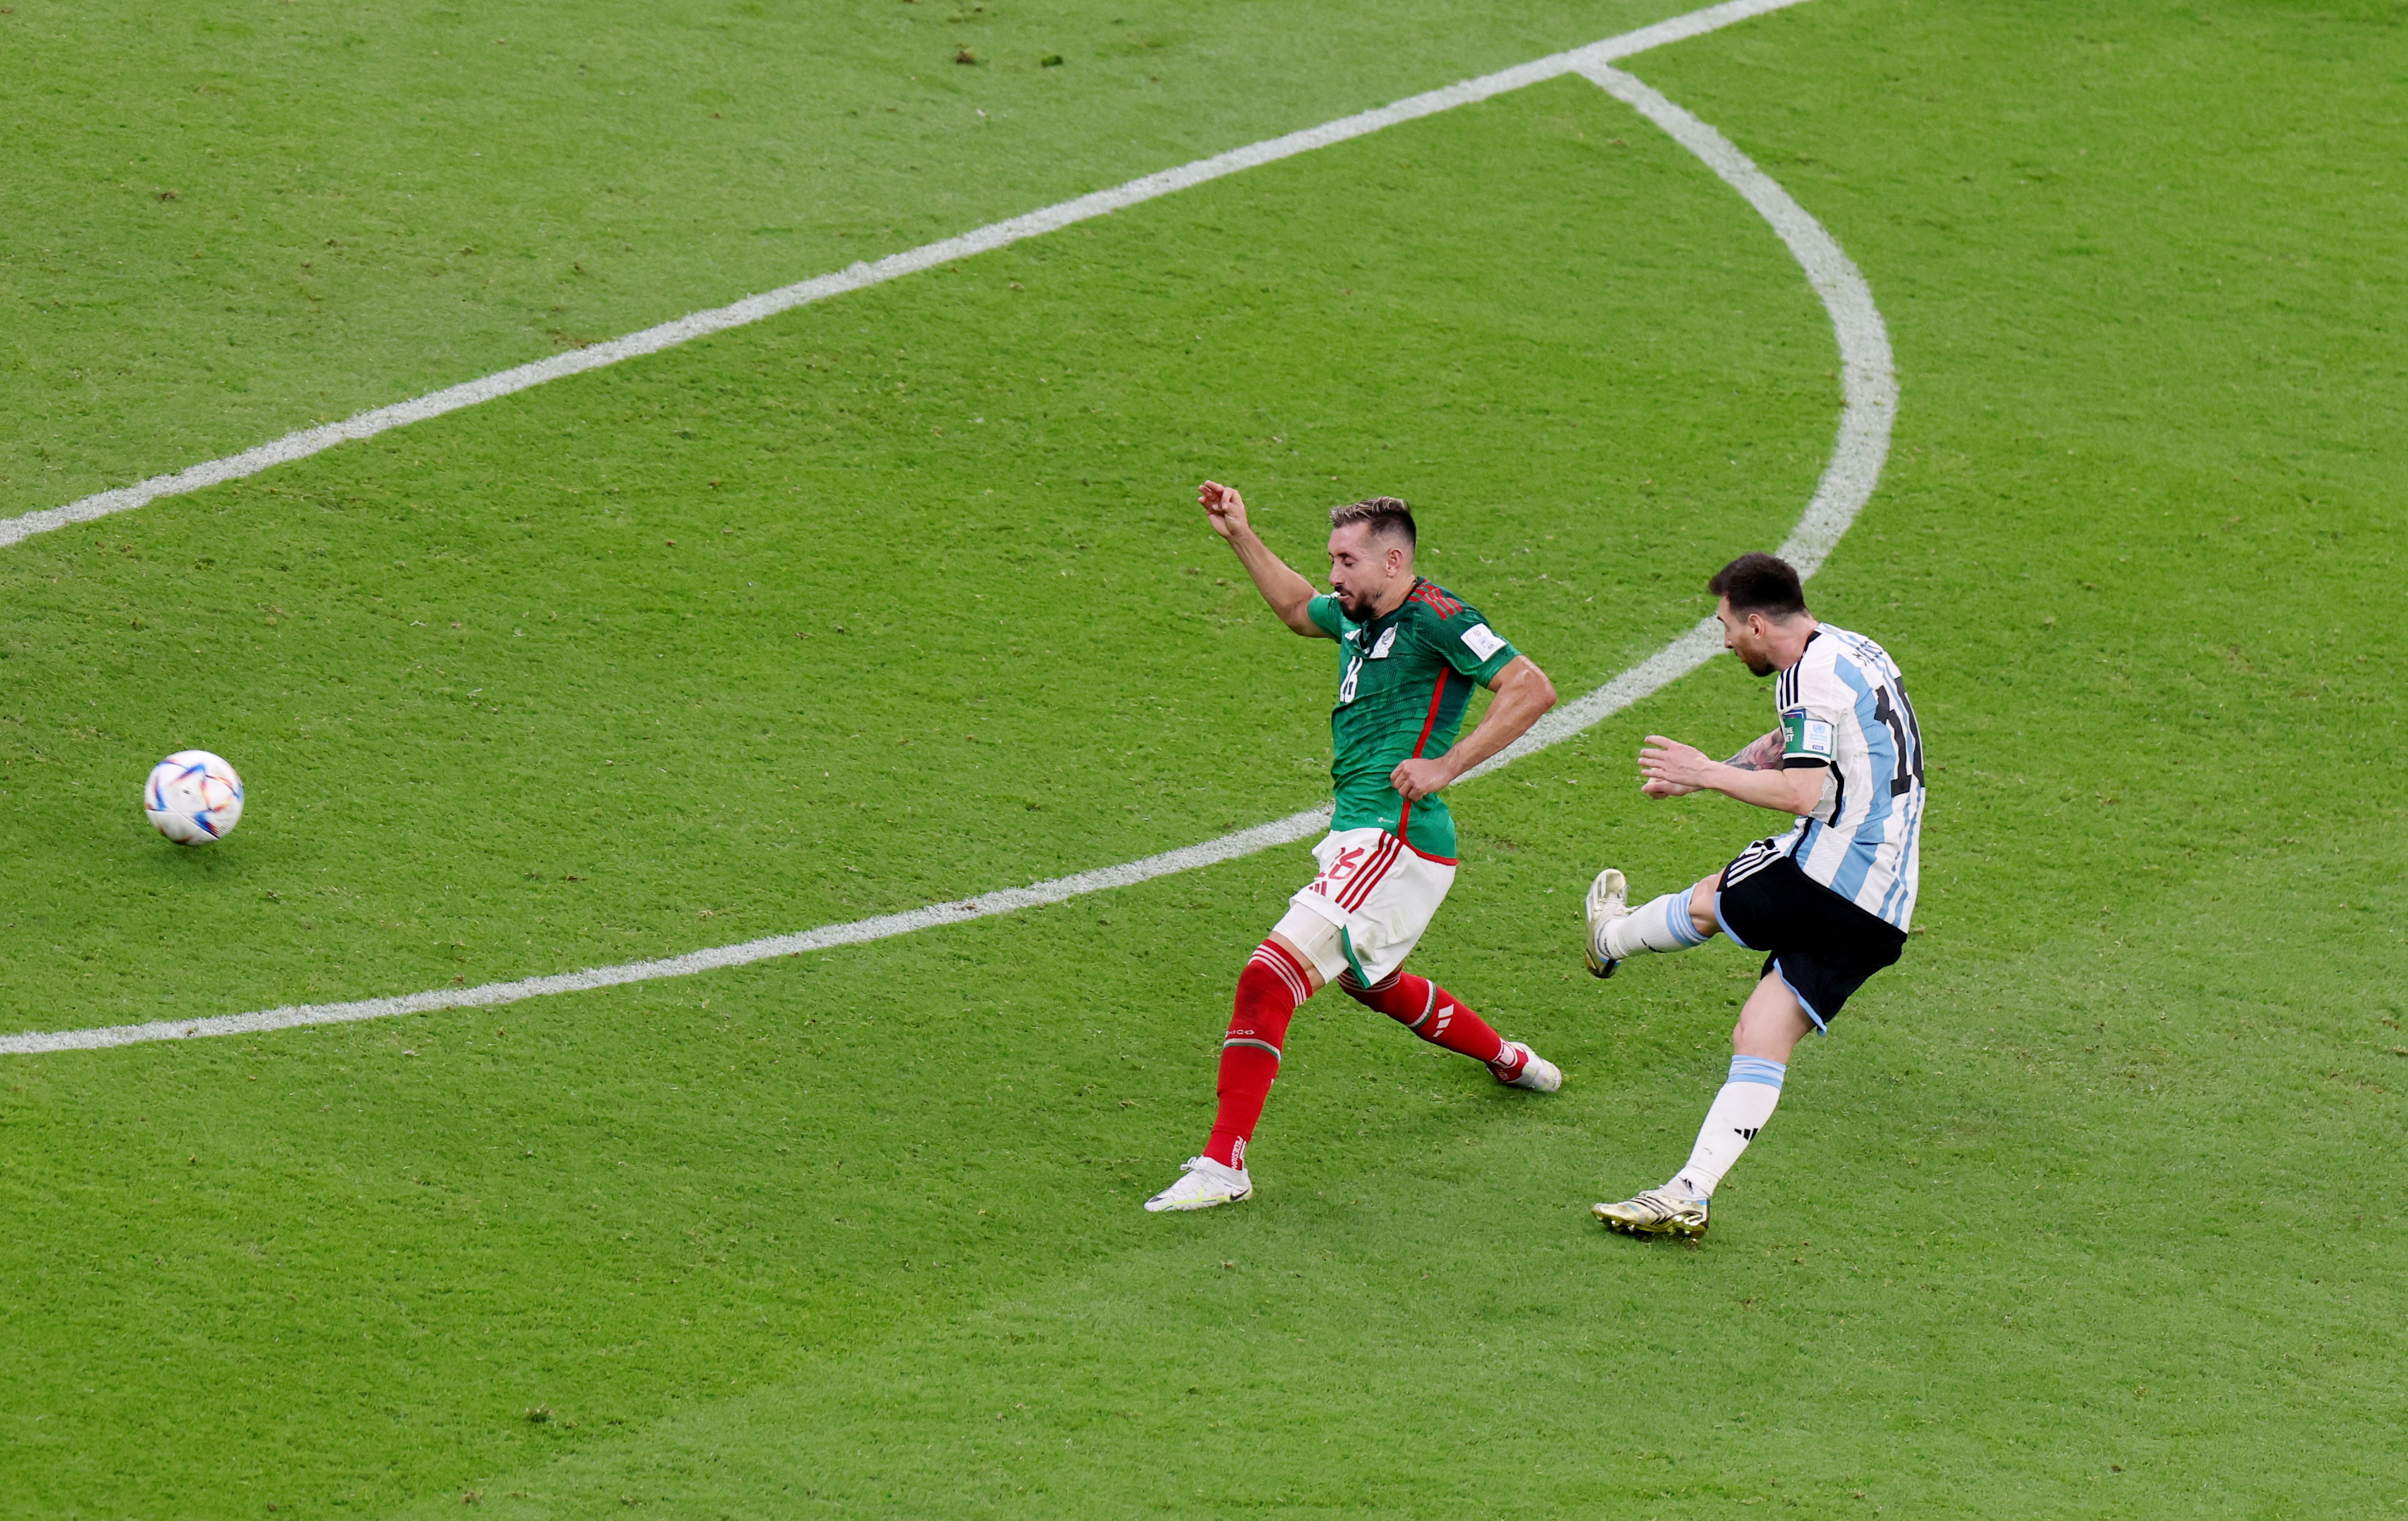 Messi recibió un pase de Di María y disparó al arco (Reuters/Molly Darlington)